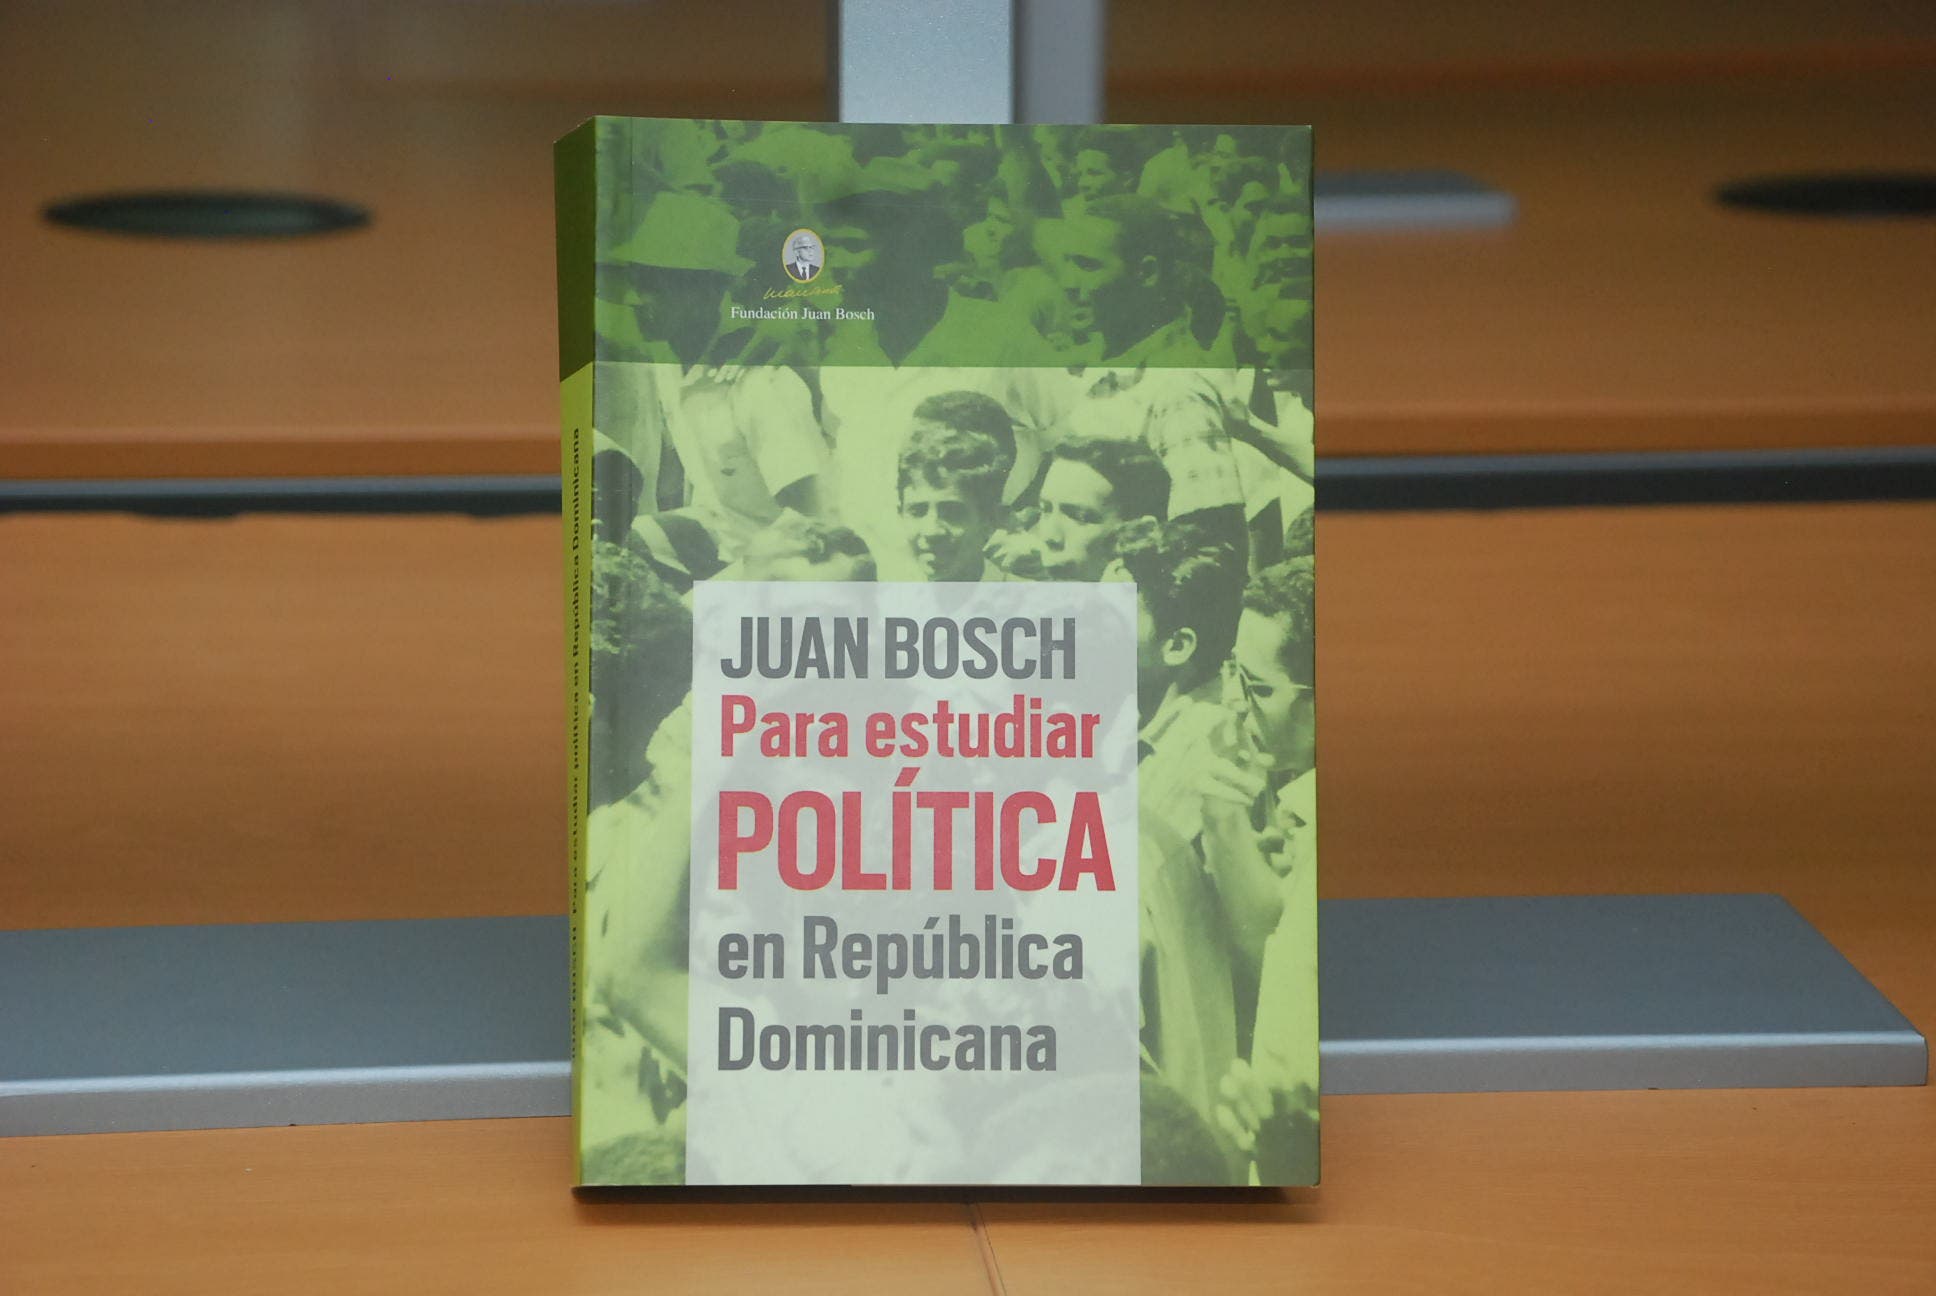 Fundación Juan Bosch pone a circular libro “Juan Bosch, para estudiar política en República Dominicana”